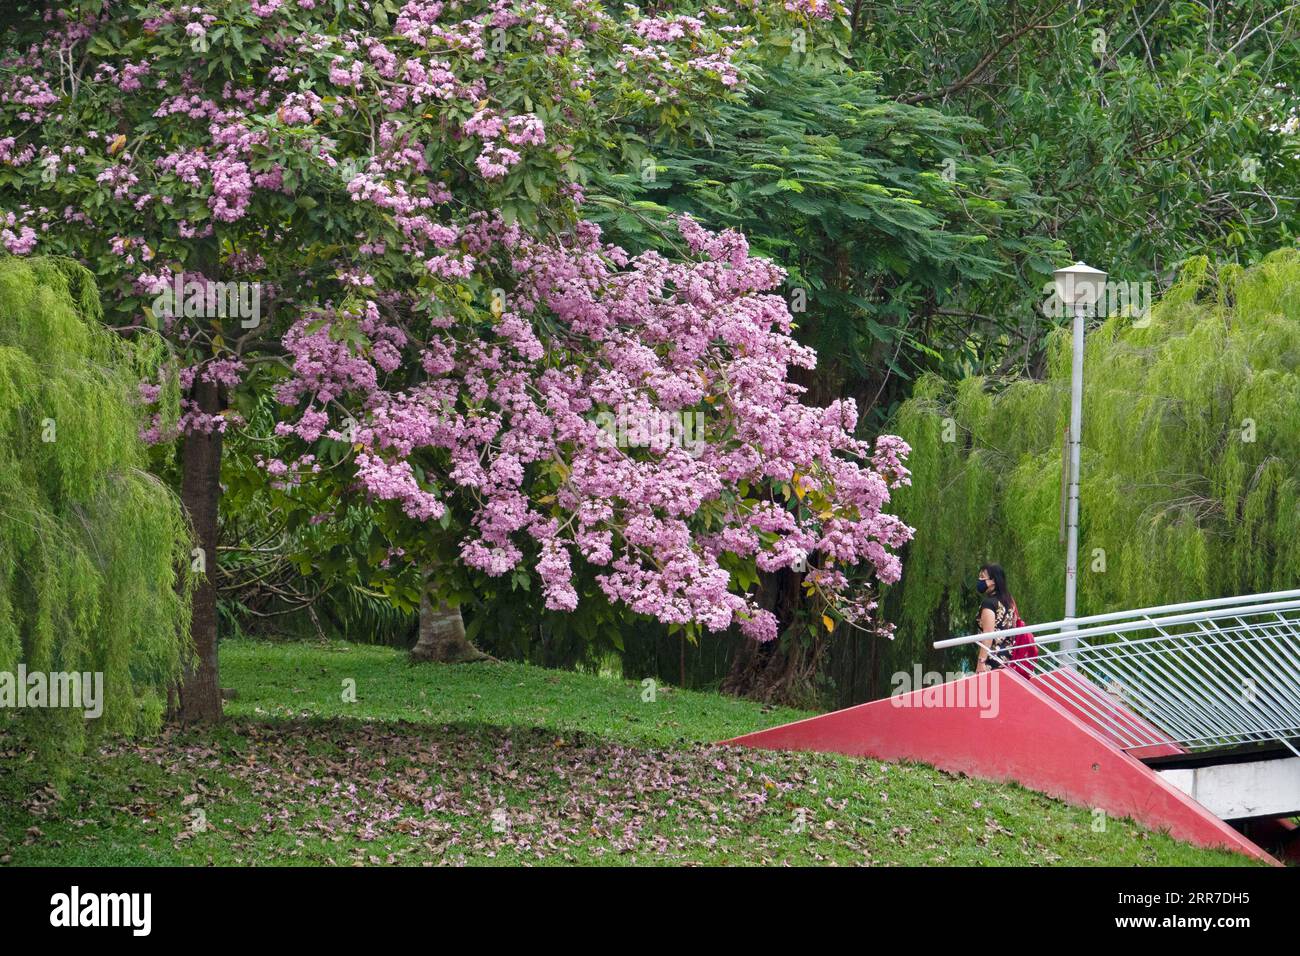 210326 -- SINGAPOUR, 26 mars 2021 -- fleurs de trompettes fleurissent dans le parc Bishan-Ang Mo Kio de Singapour le 25 mars 2021. SINGAPOUR-FLEURS-PRINTEMPS ThenxChihxWey PUBLICATIONxNOTxINxCHN Banque D'Images